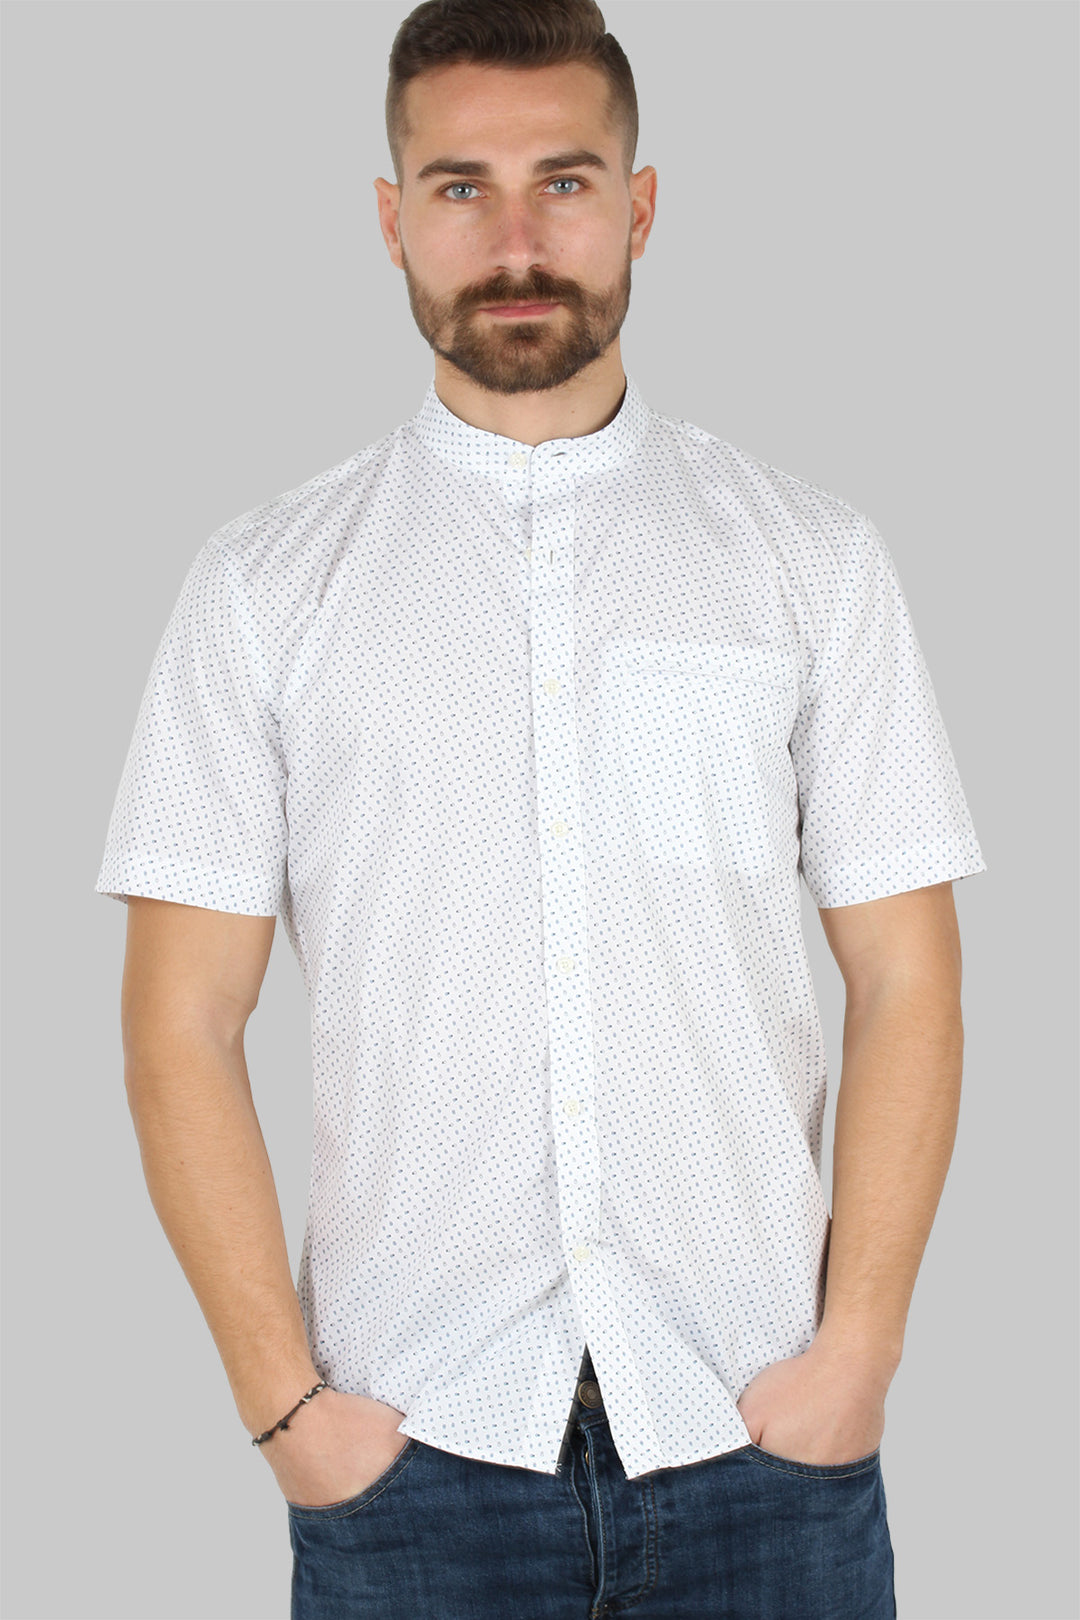 Camicia mezza manica uomo con microfantasia a contrasto